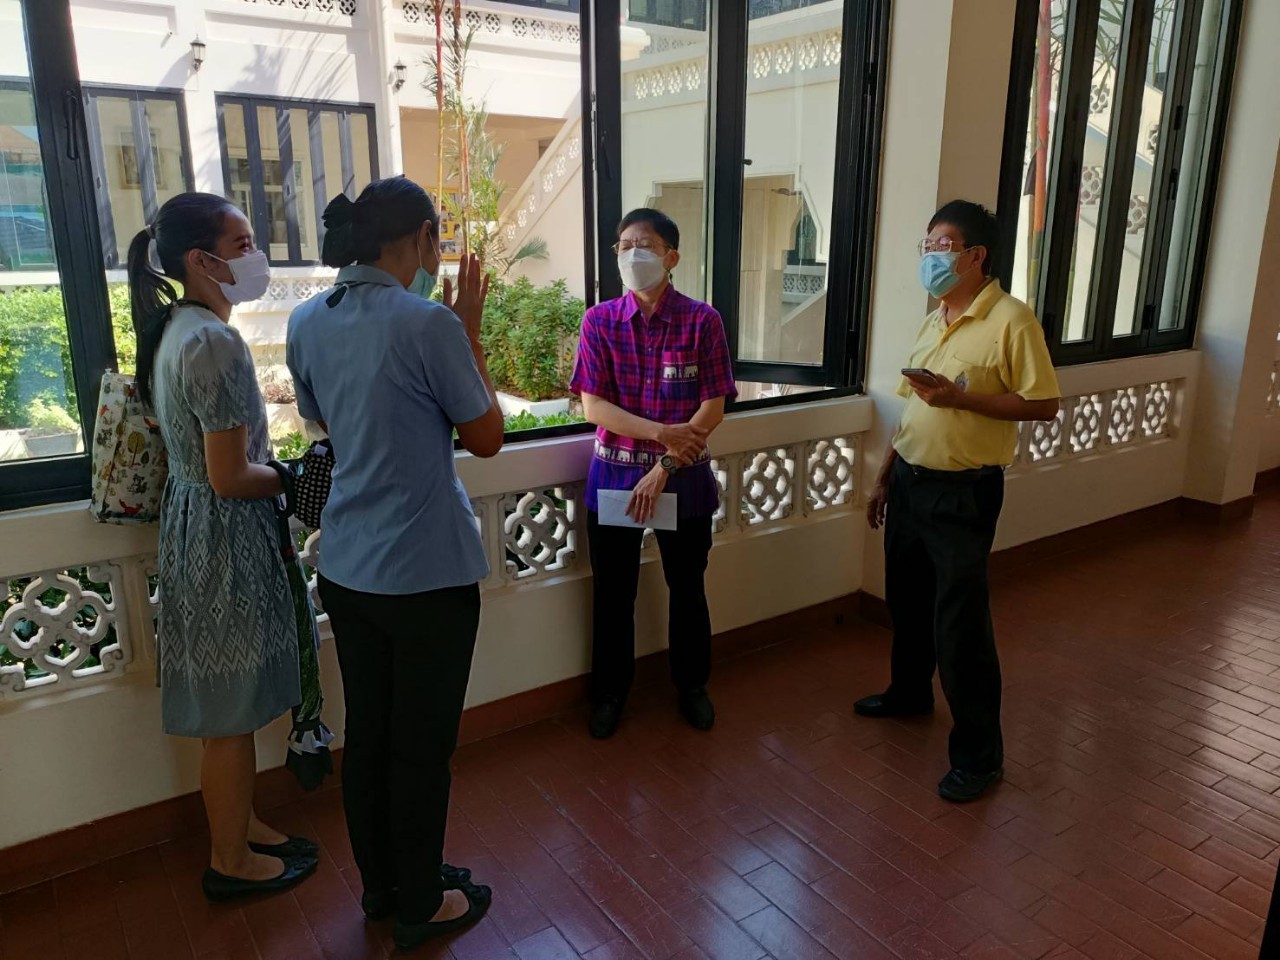 หอสมุดแห่งชาติรัชมังคลาภิเษก จันทบุรี ให้การต้อนรับอาจารย์และนักศึกษา วิทยาลัยพยาบาลพระปกเกล้า จันทบุรี